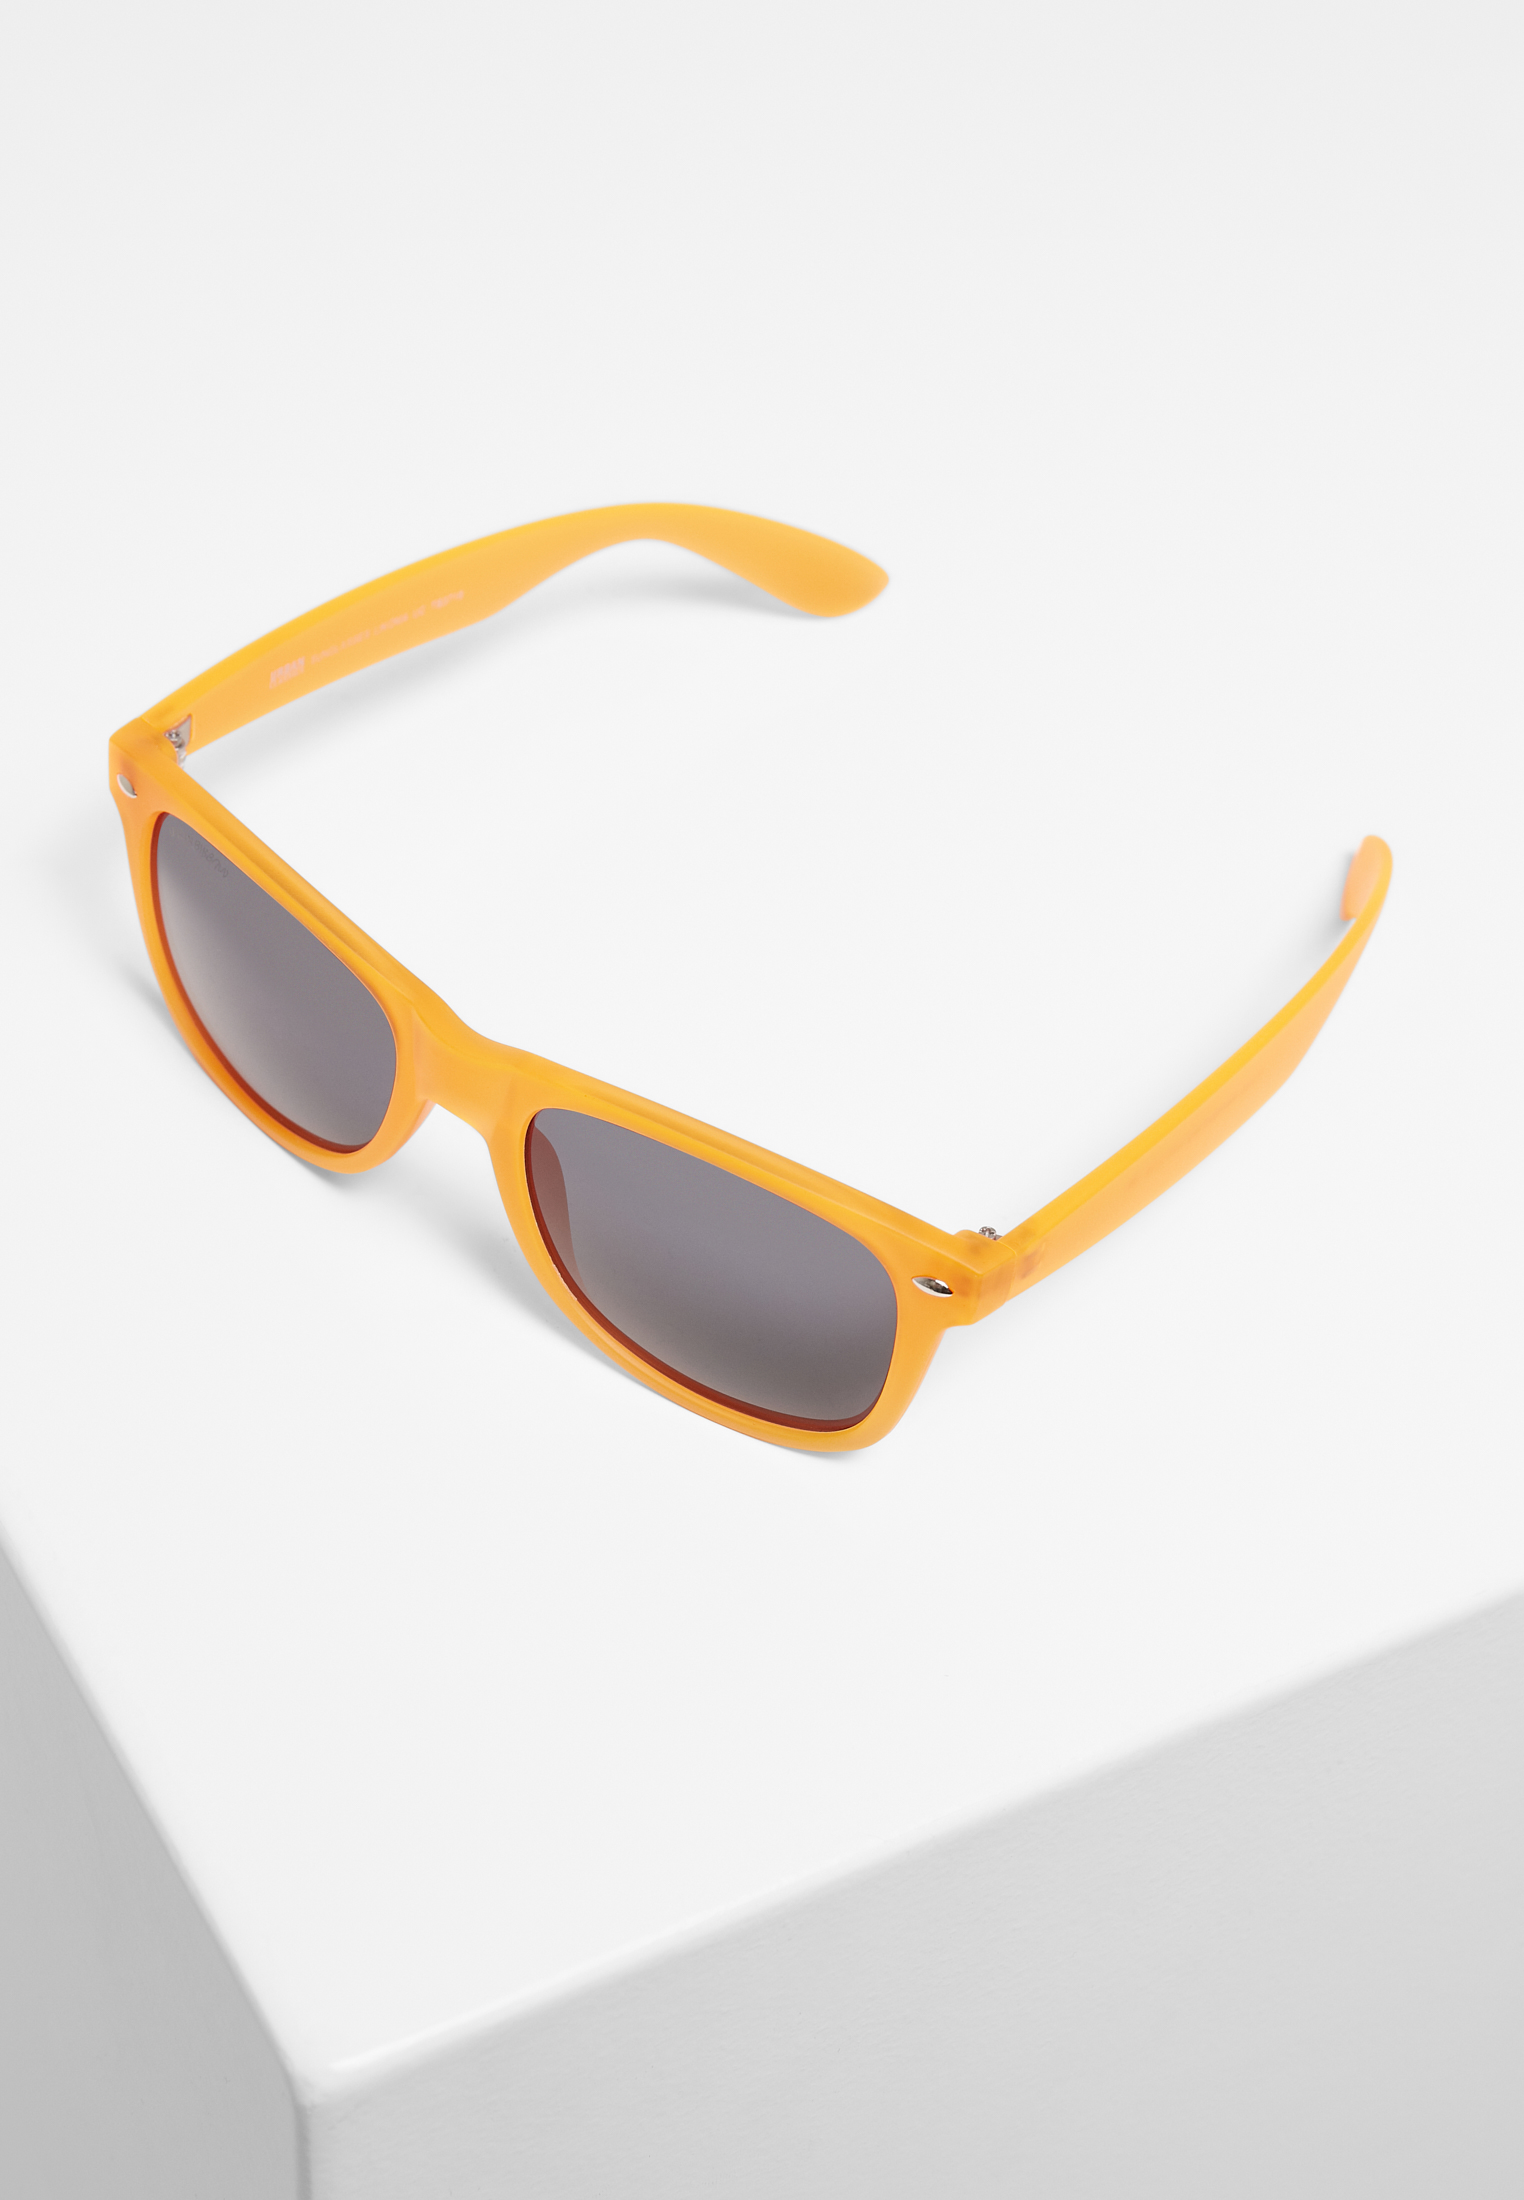 Sonnenbrillen Sunglasses Likoma UC in Farbe neonorange